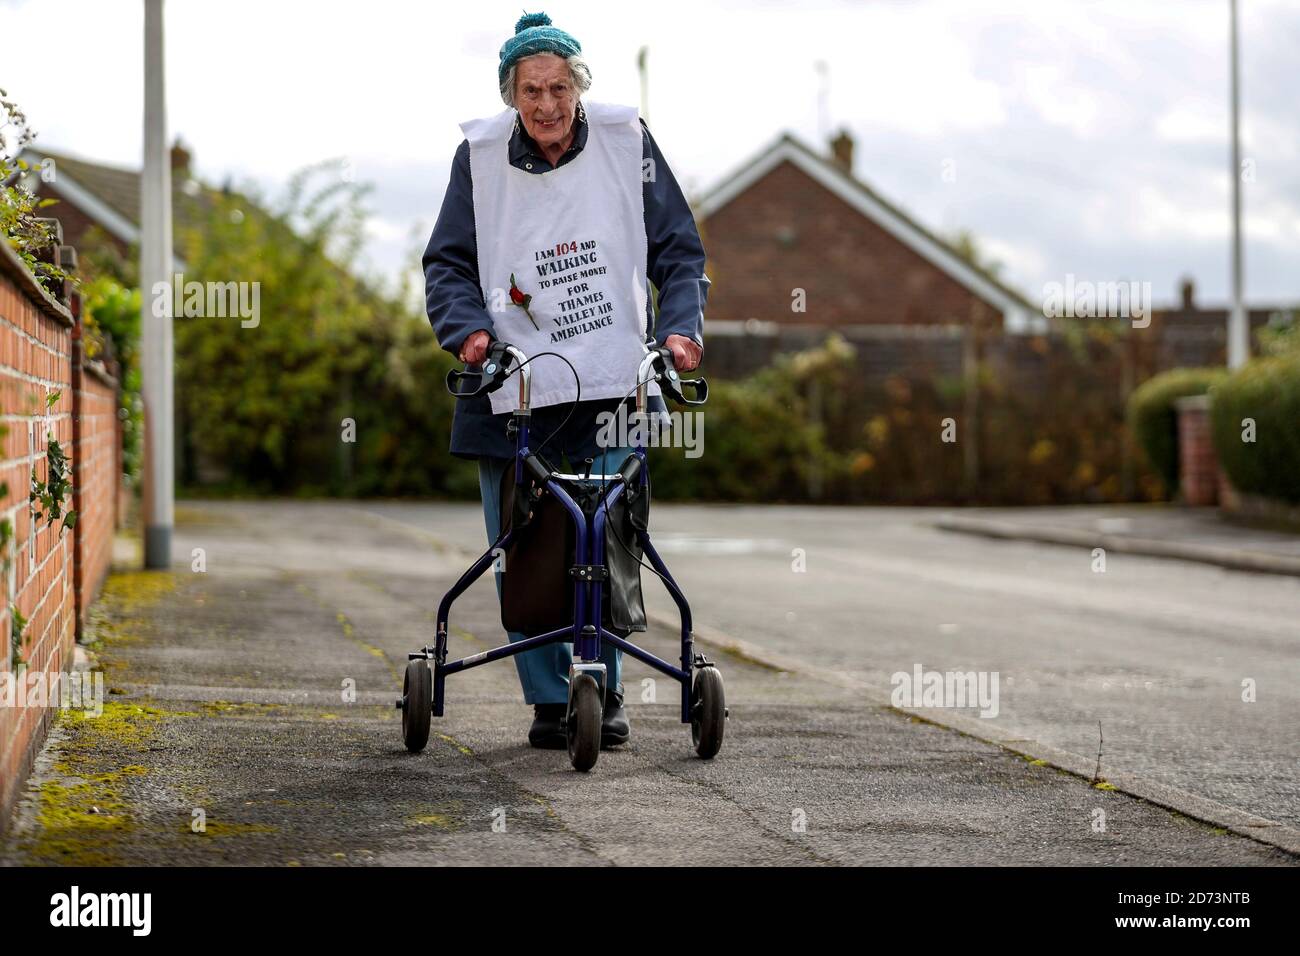 Die 104-jährige Ruth Saunders in Newbury, Berkshire, läuft einen Marathon, um Geld für Thames Valley Air Ambulance zu sammeln. Ruth, die über 8,000 GBP gesammelt hat, machte sich ursprünglich auf den Weg, 104 Runden ihres Blocks zu laufen, um ihrem Alter, einer Strecke von etwa 21 Meilen, zu entsprechen, entschied sich aber, ihr Ziel auf einen vollen Marathon (26.2 Meilen) auszudehnen, nachdem sie von ihrer Familie ermutigt wurde. Stockfoto